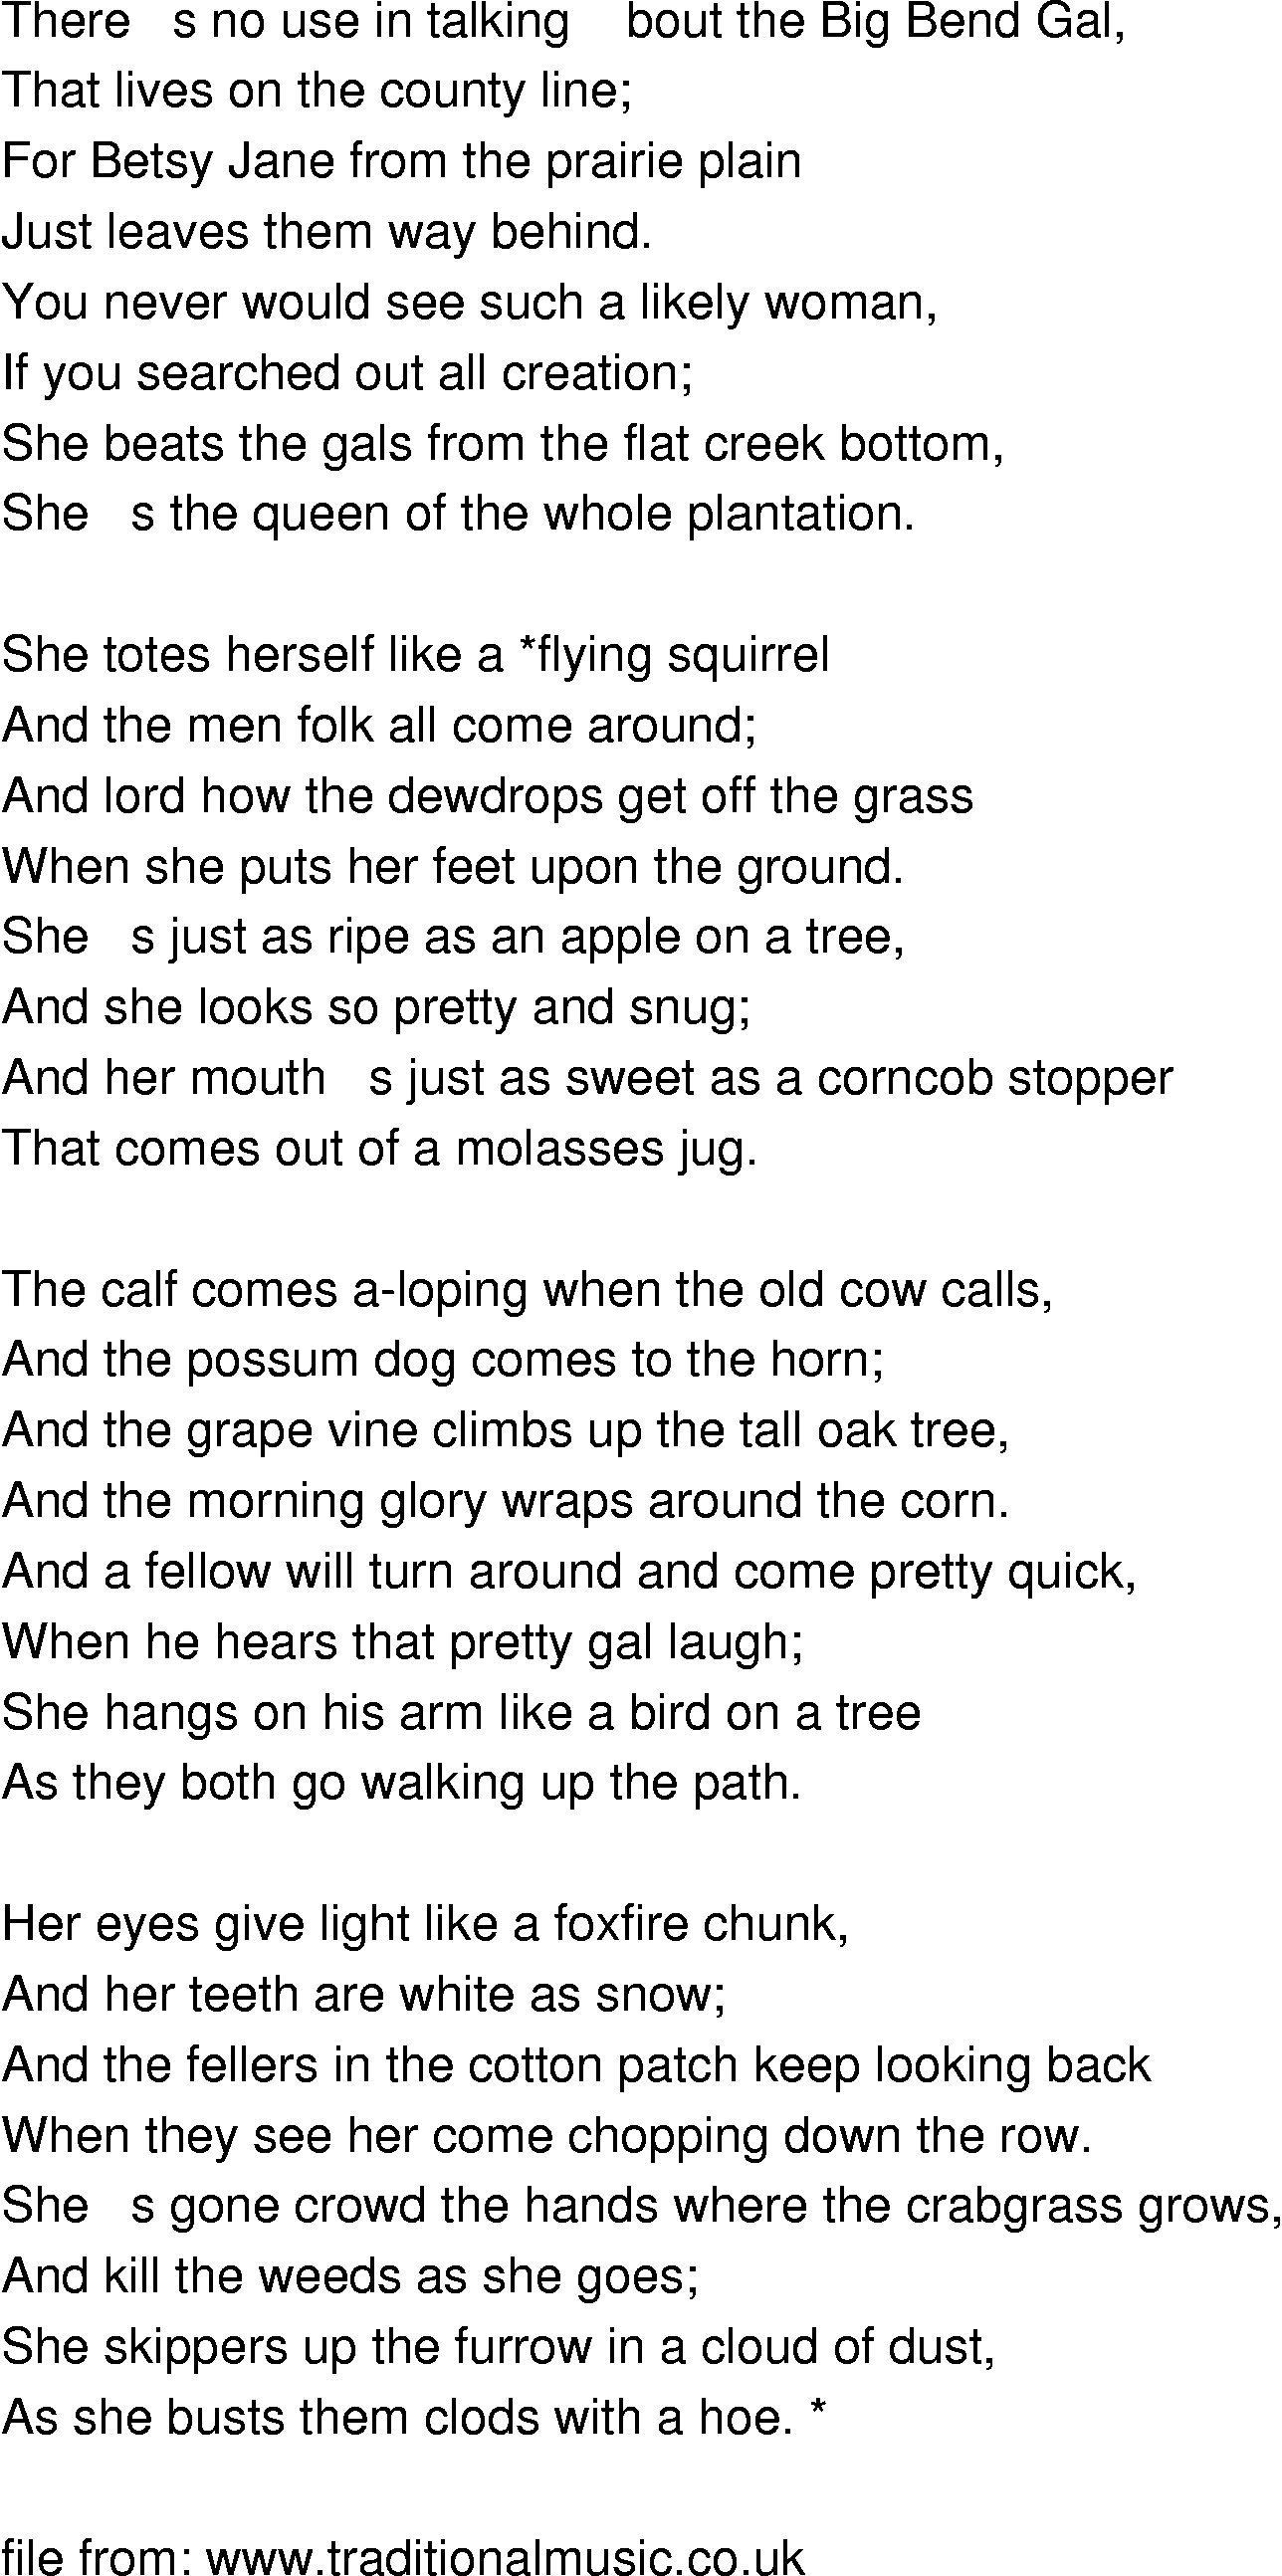 Old-Time (oldtimey) Song Lyrics - big bend gal